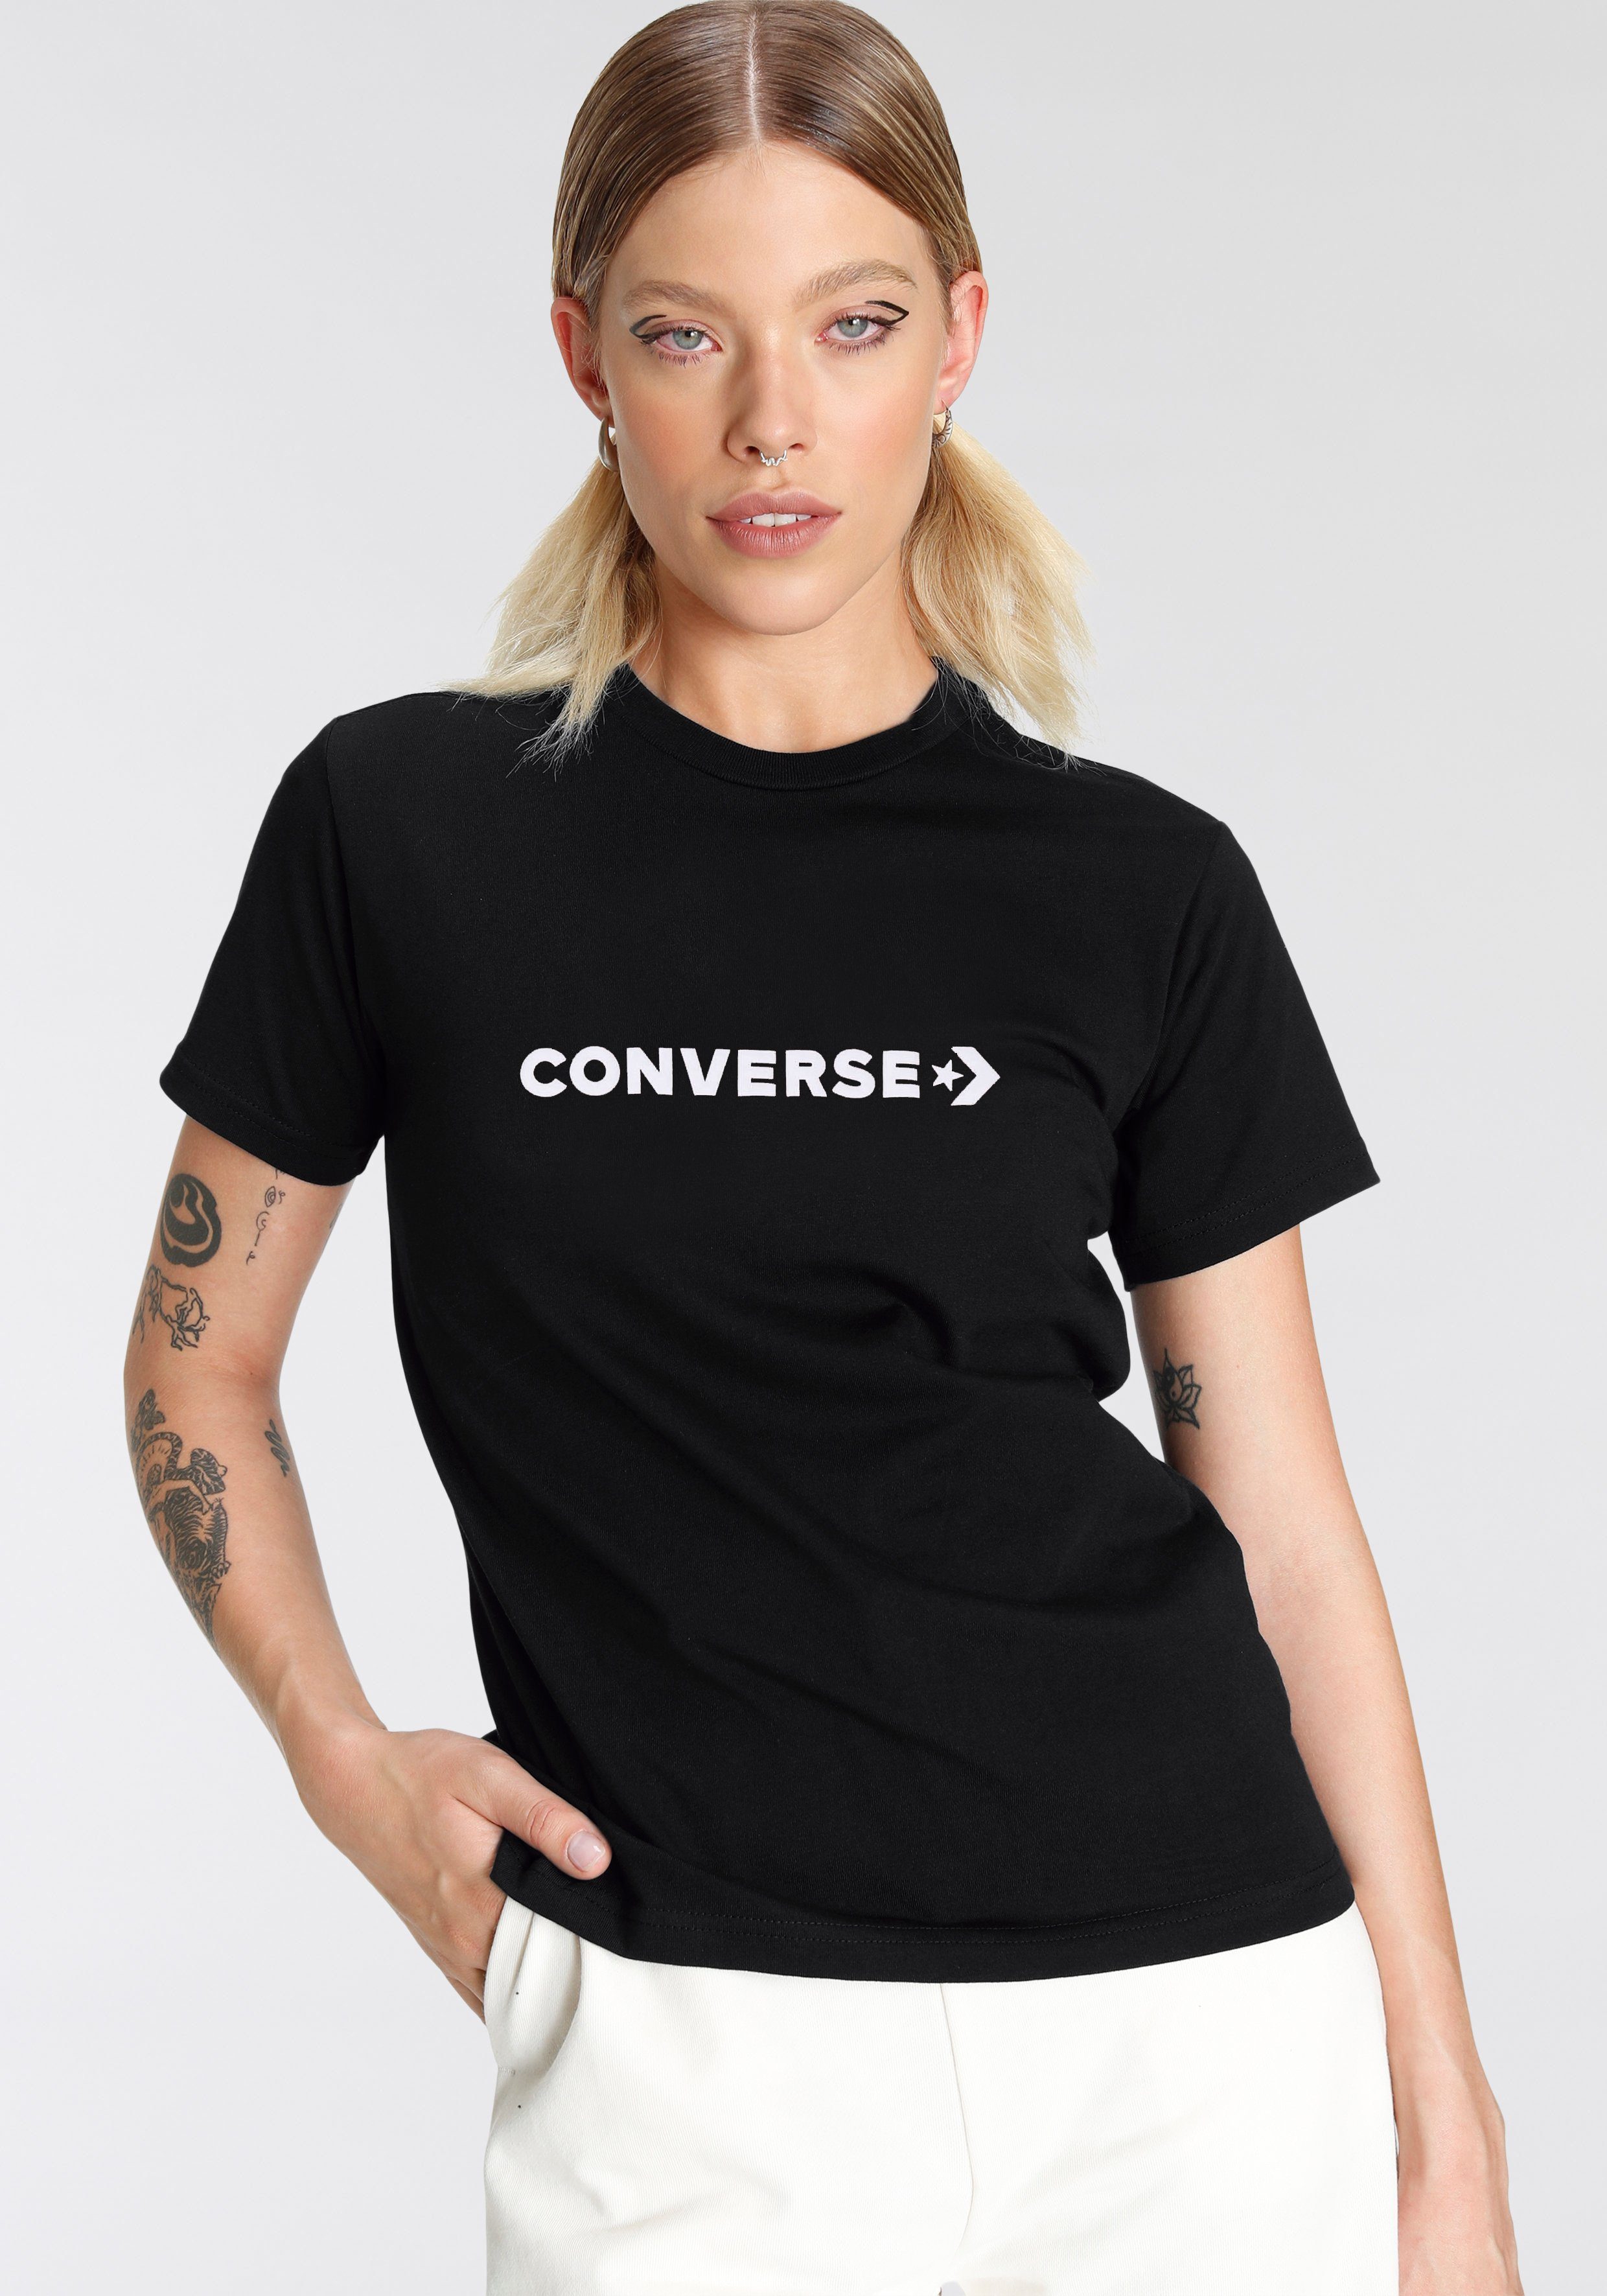 Neueste Produkte aus dem Ausland Damen T-Shirt Converse black CONVERSE T-Shirt